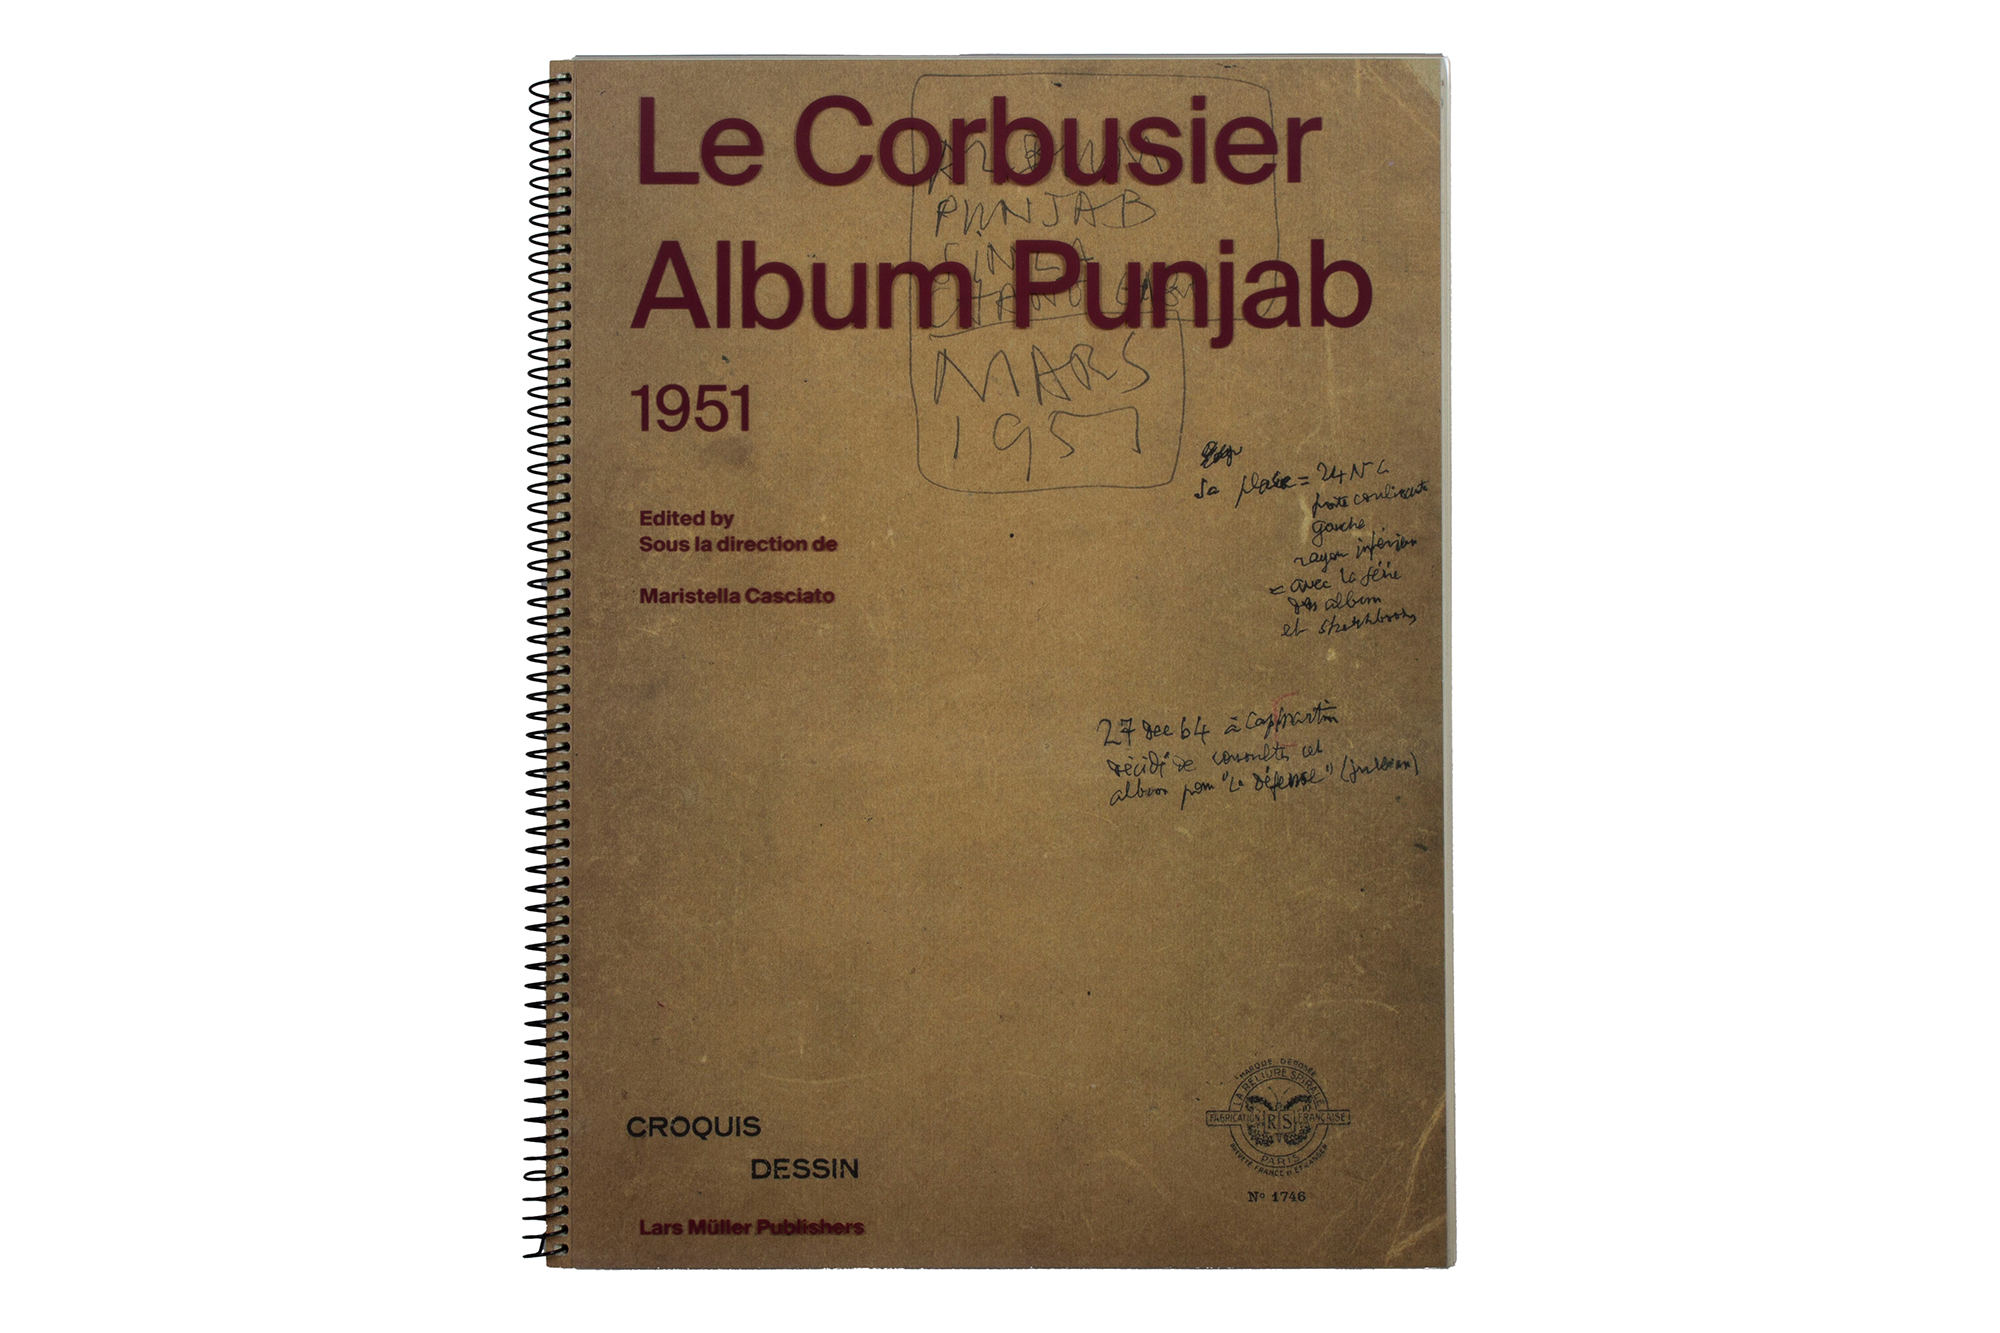 Spiralgebundenes Notizbuch von Le Corbusier in einer Faksimile-Ausgabe.